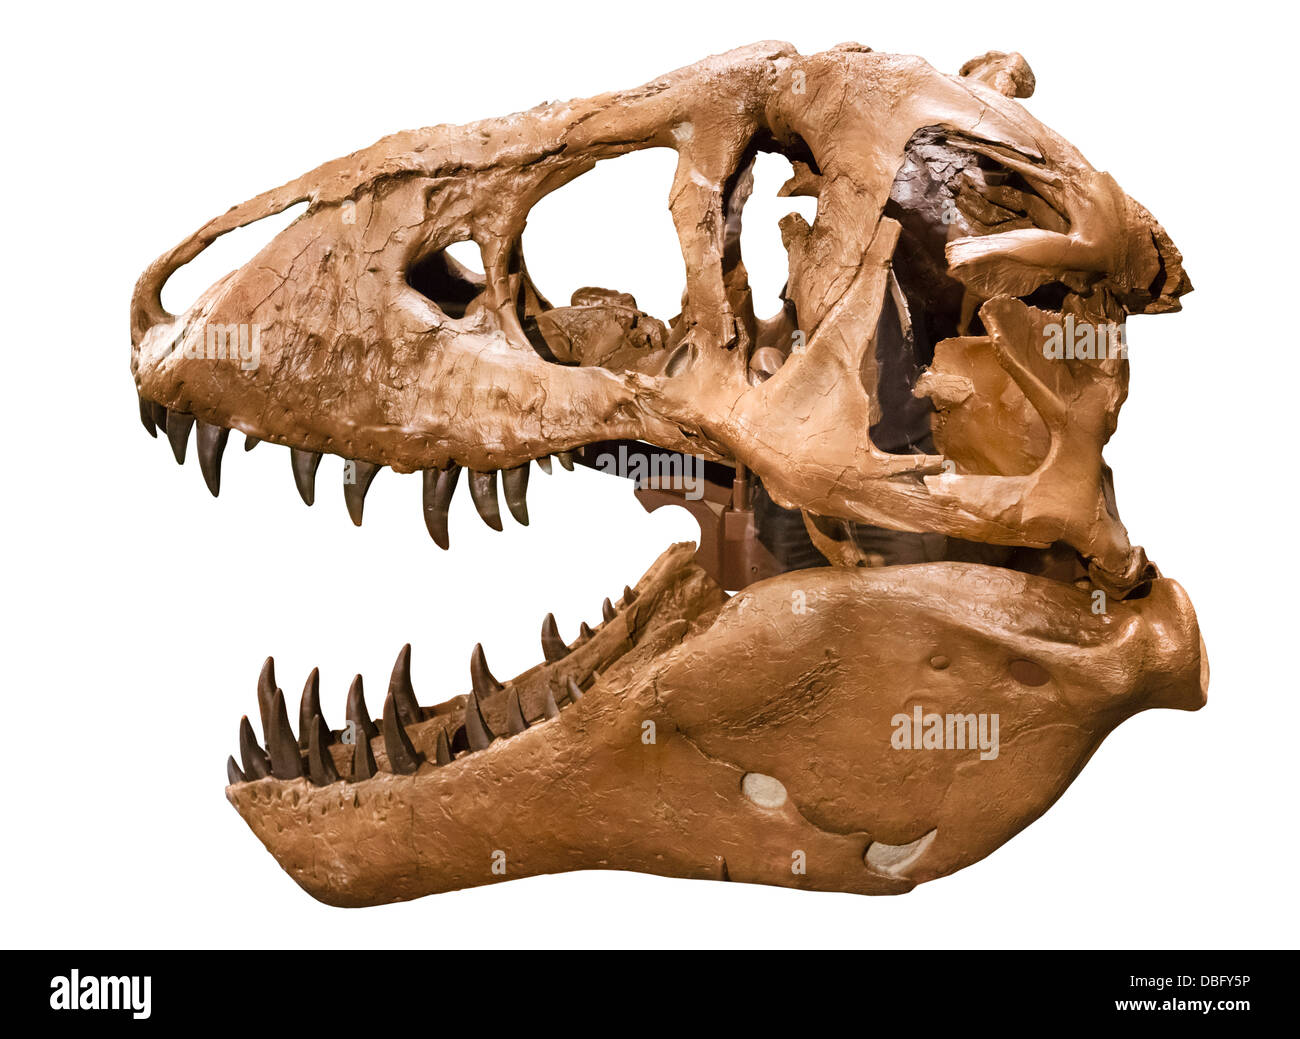 T Rex. De découpe MOR 555 crâne de Tyrannosaurus rex (réplique), Museum of the Rockies, Bozeman, Montana, USA Banque D'Images